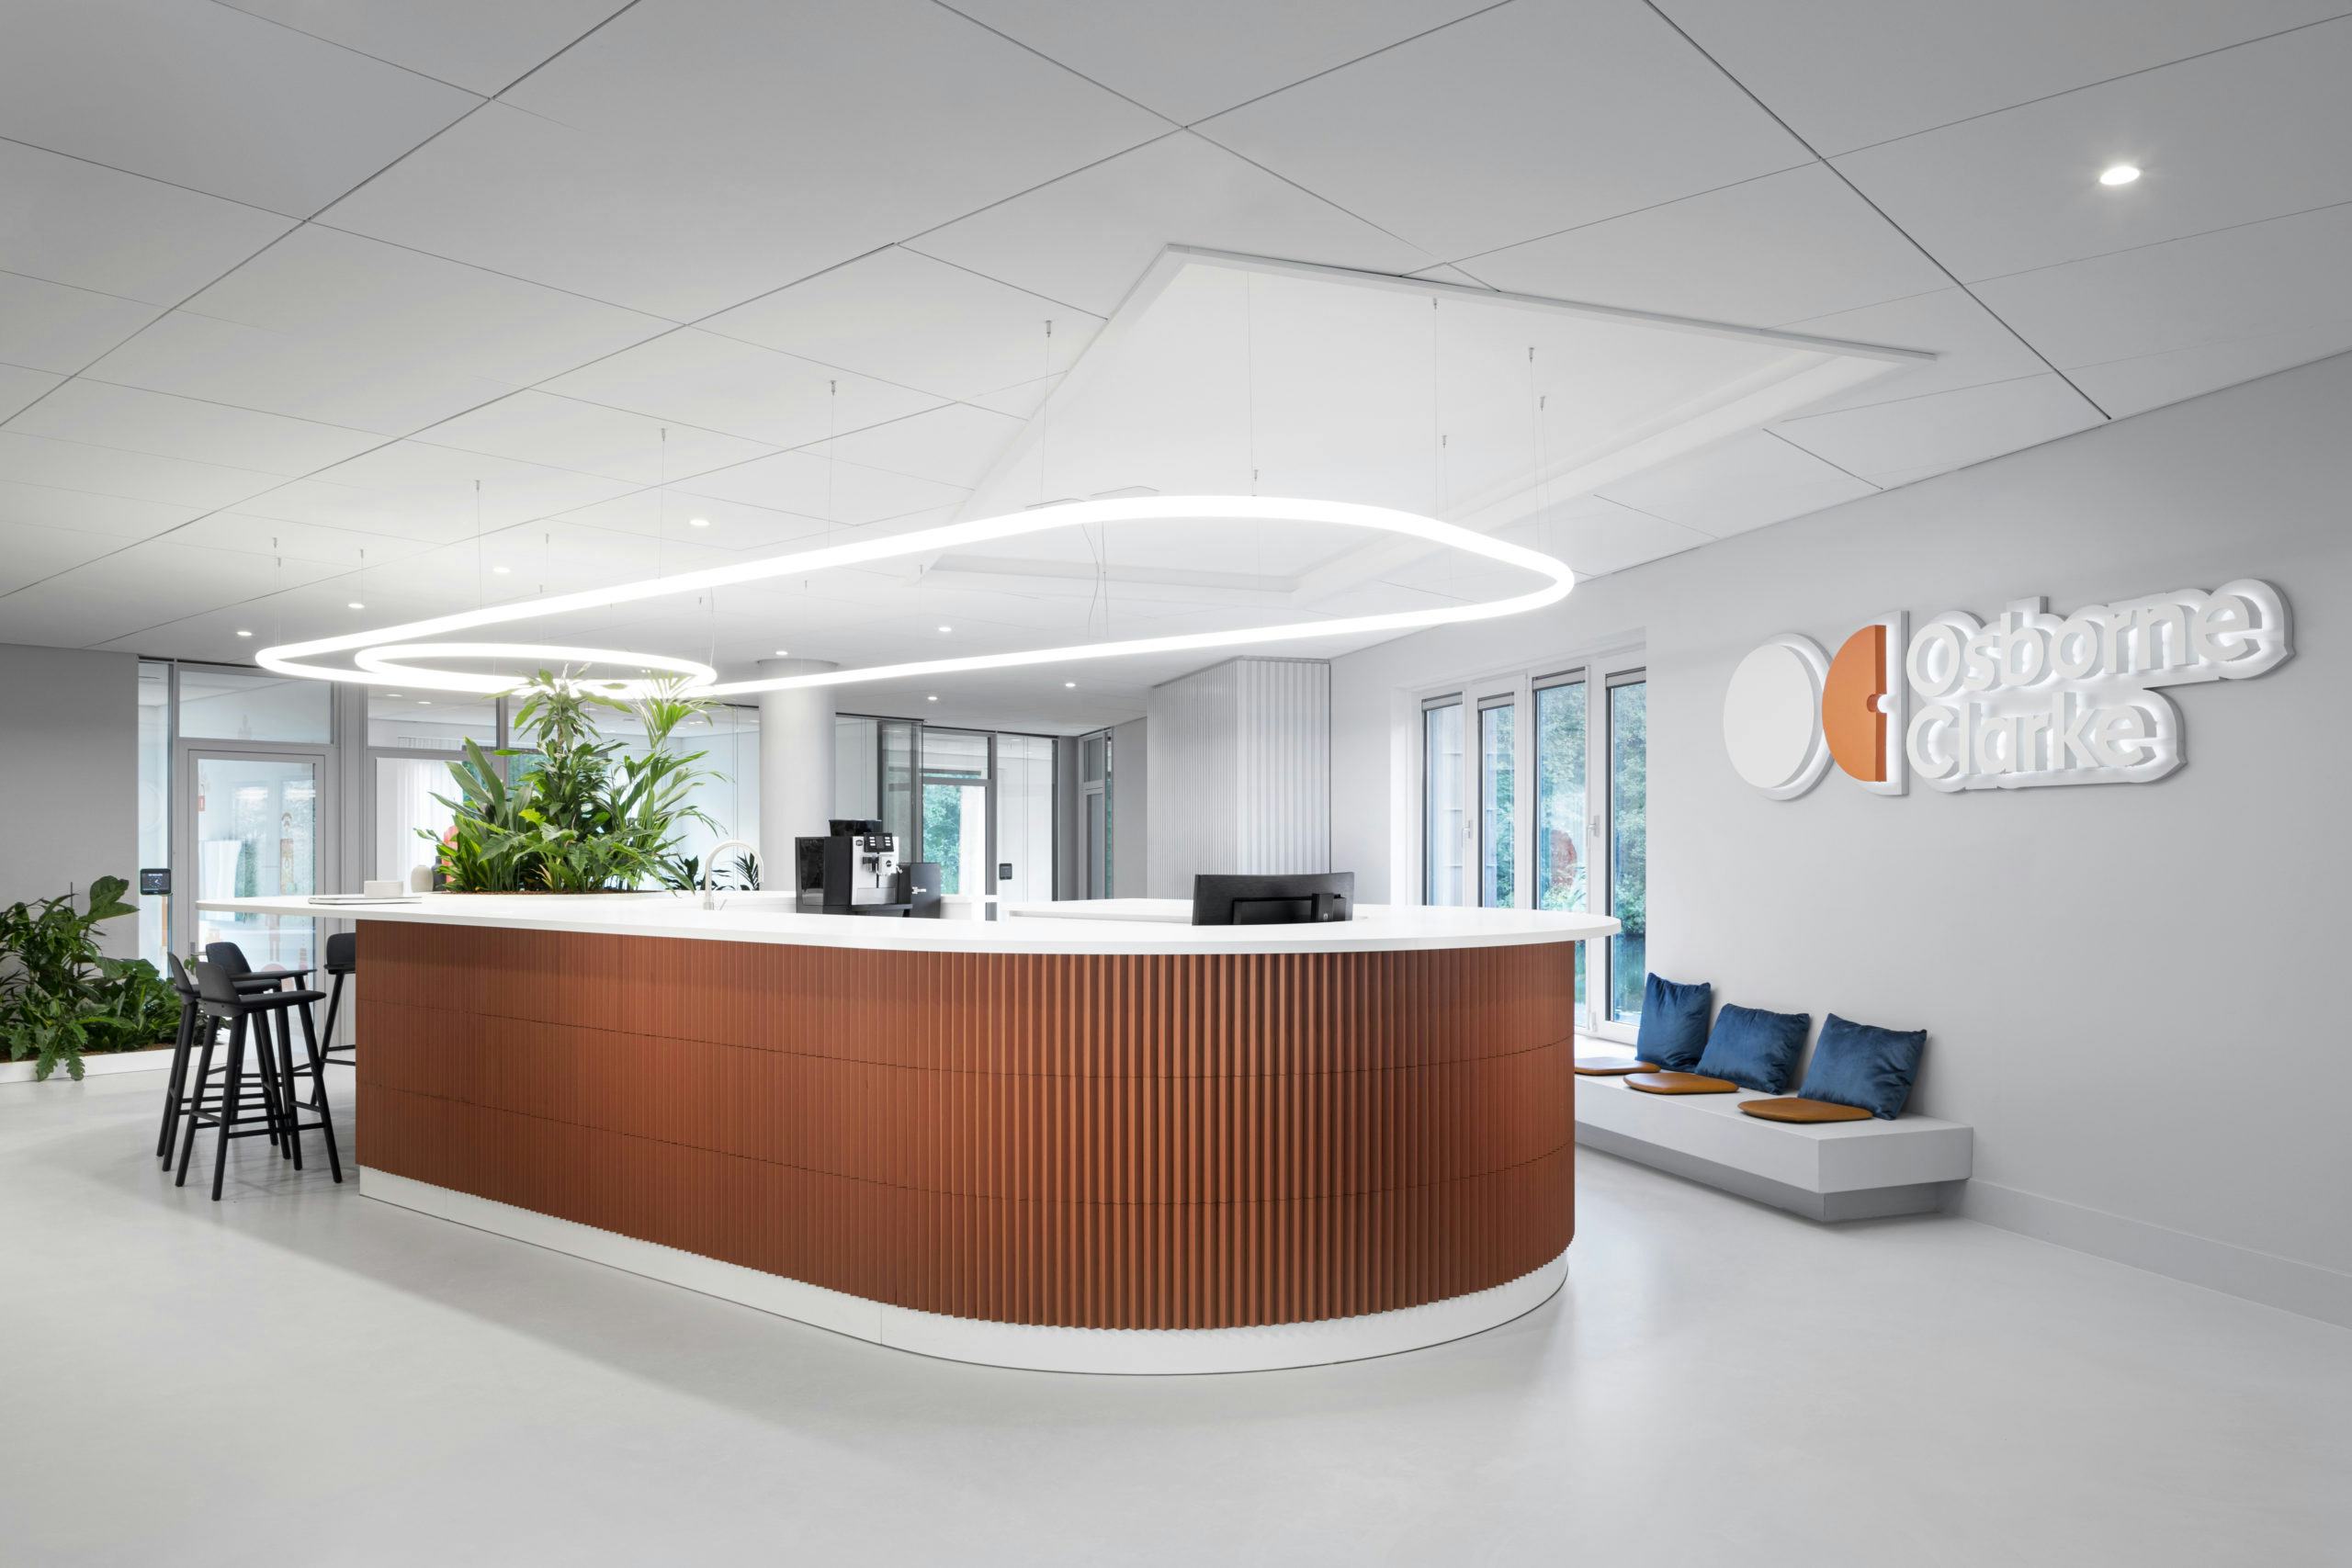 Osborne Clarke kantoor in Amsterdam door Hollandse Nieuwe en Cerius Projects. Beeld Ewout Huibers